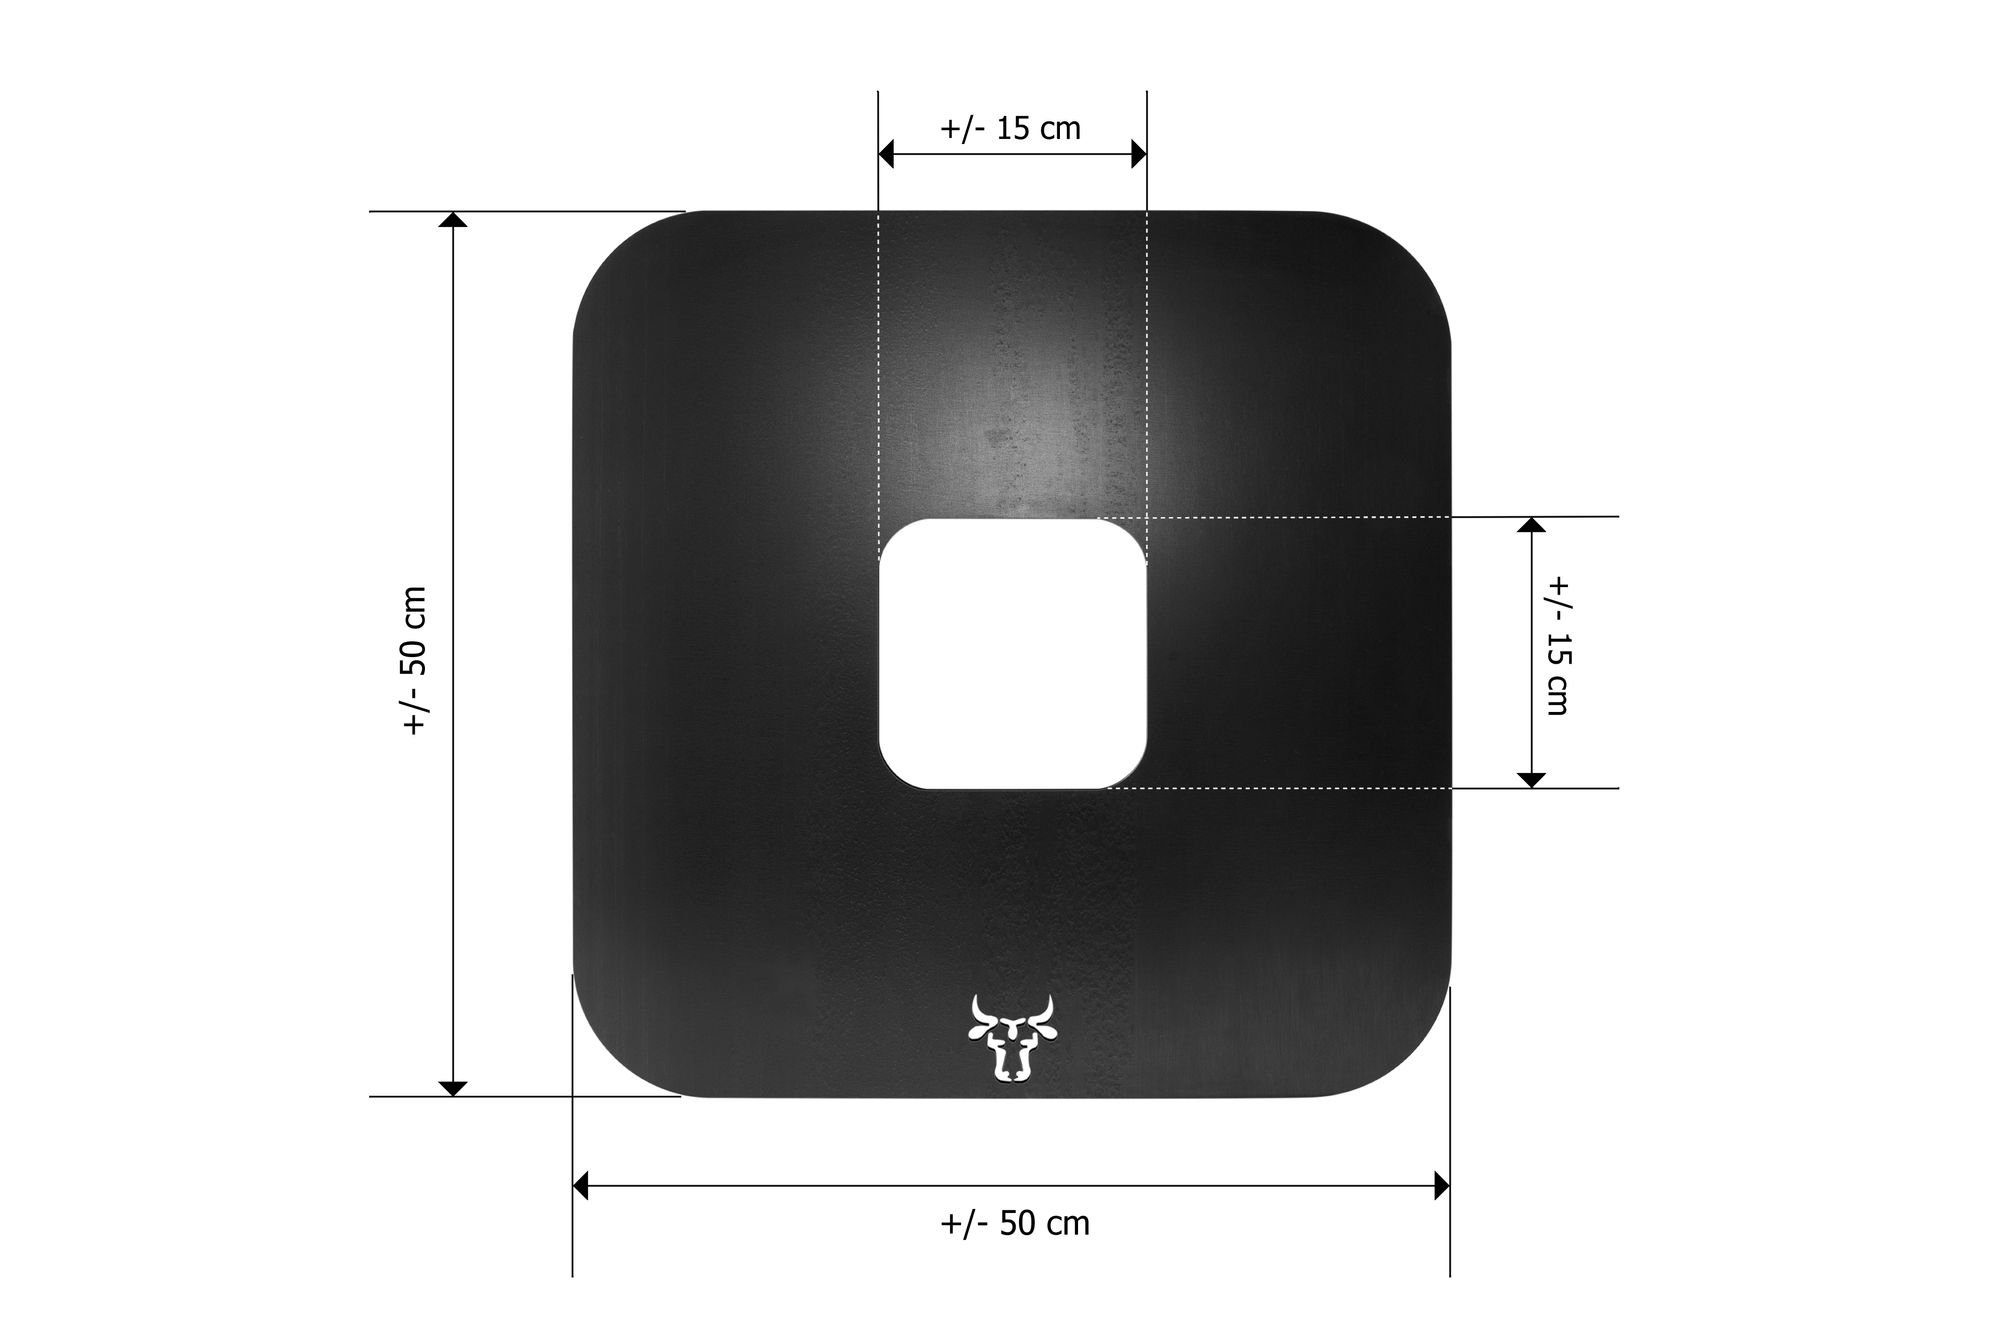 Feuerplatte BBQ-Platte tuning-art GPB01 Grillaufsatz Grillplatte Grillring Plancha